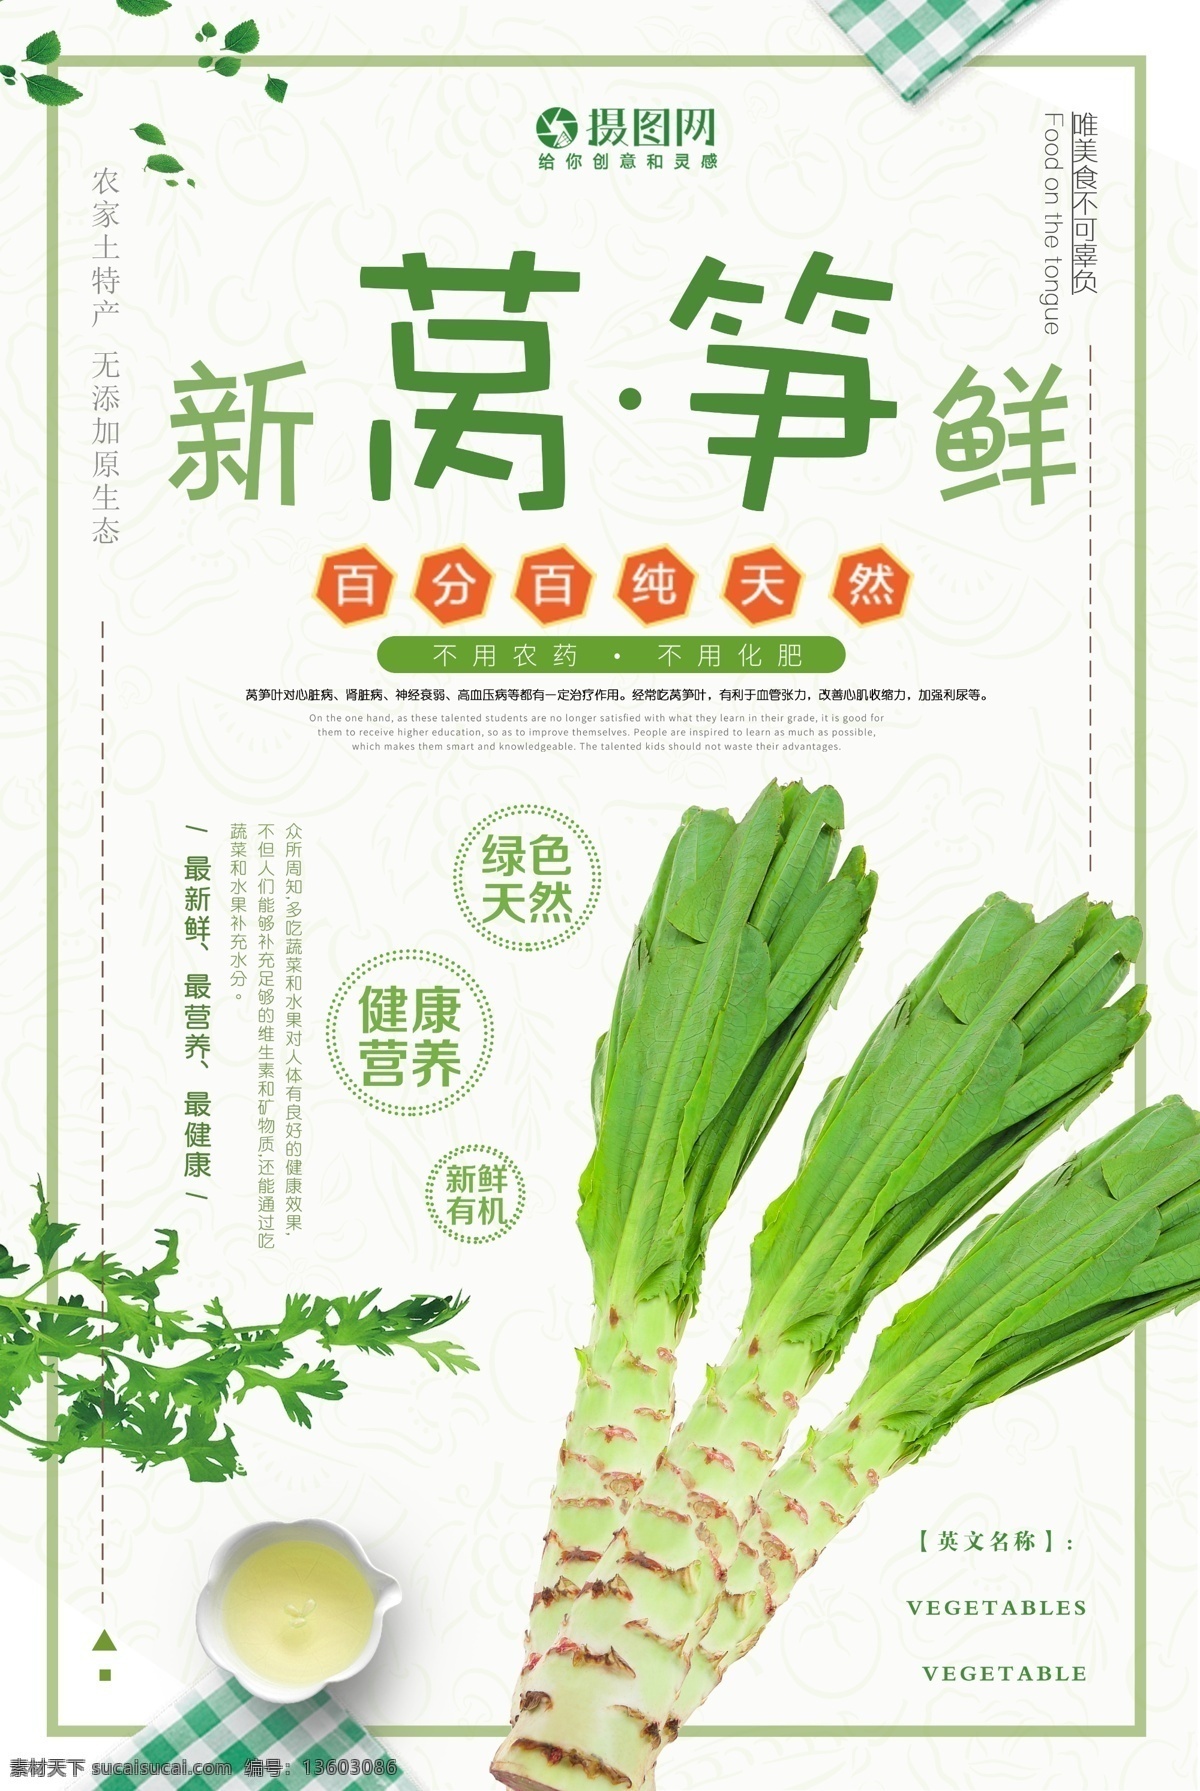 新鲜 莴笋 食 材 海报 新鲜莴笋 食材海报 蔬菜 新鲜蔬菜 莴笋海报 蔬菜海报 绿色 青菜 促销海报 蔬菜促销